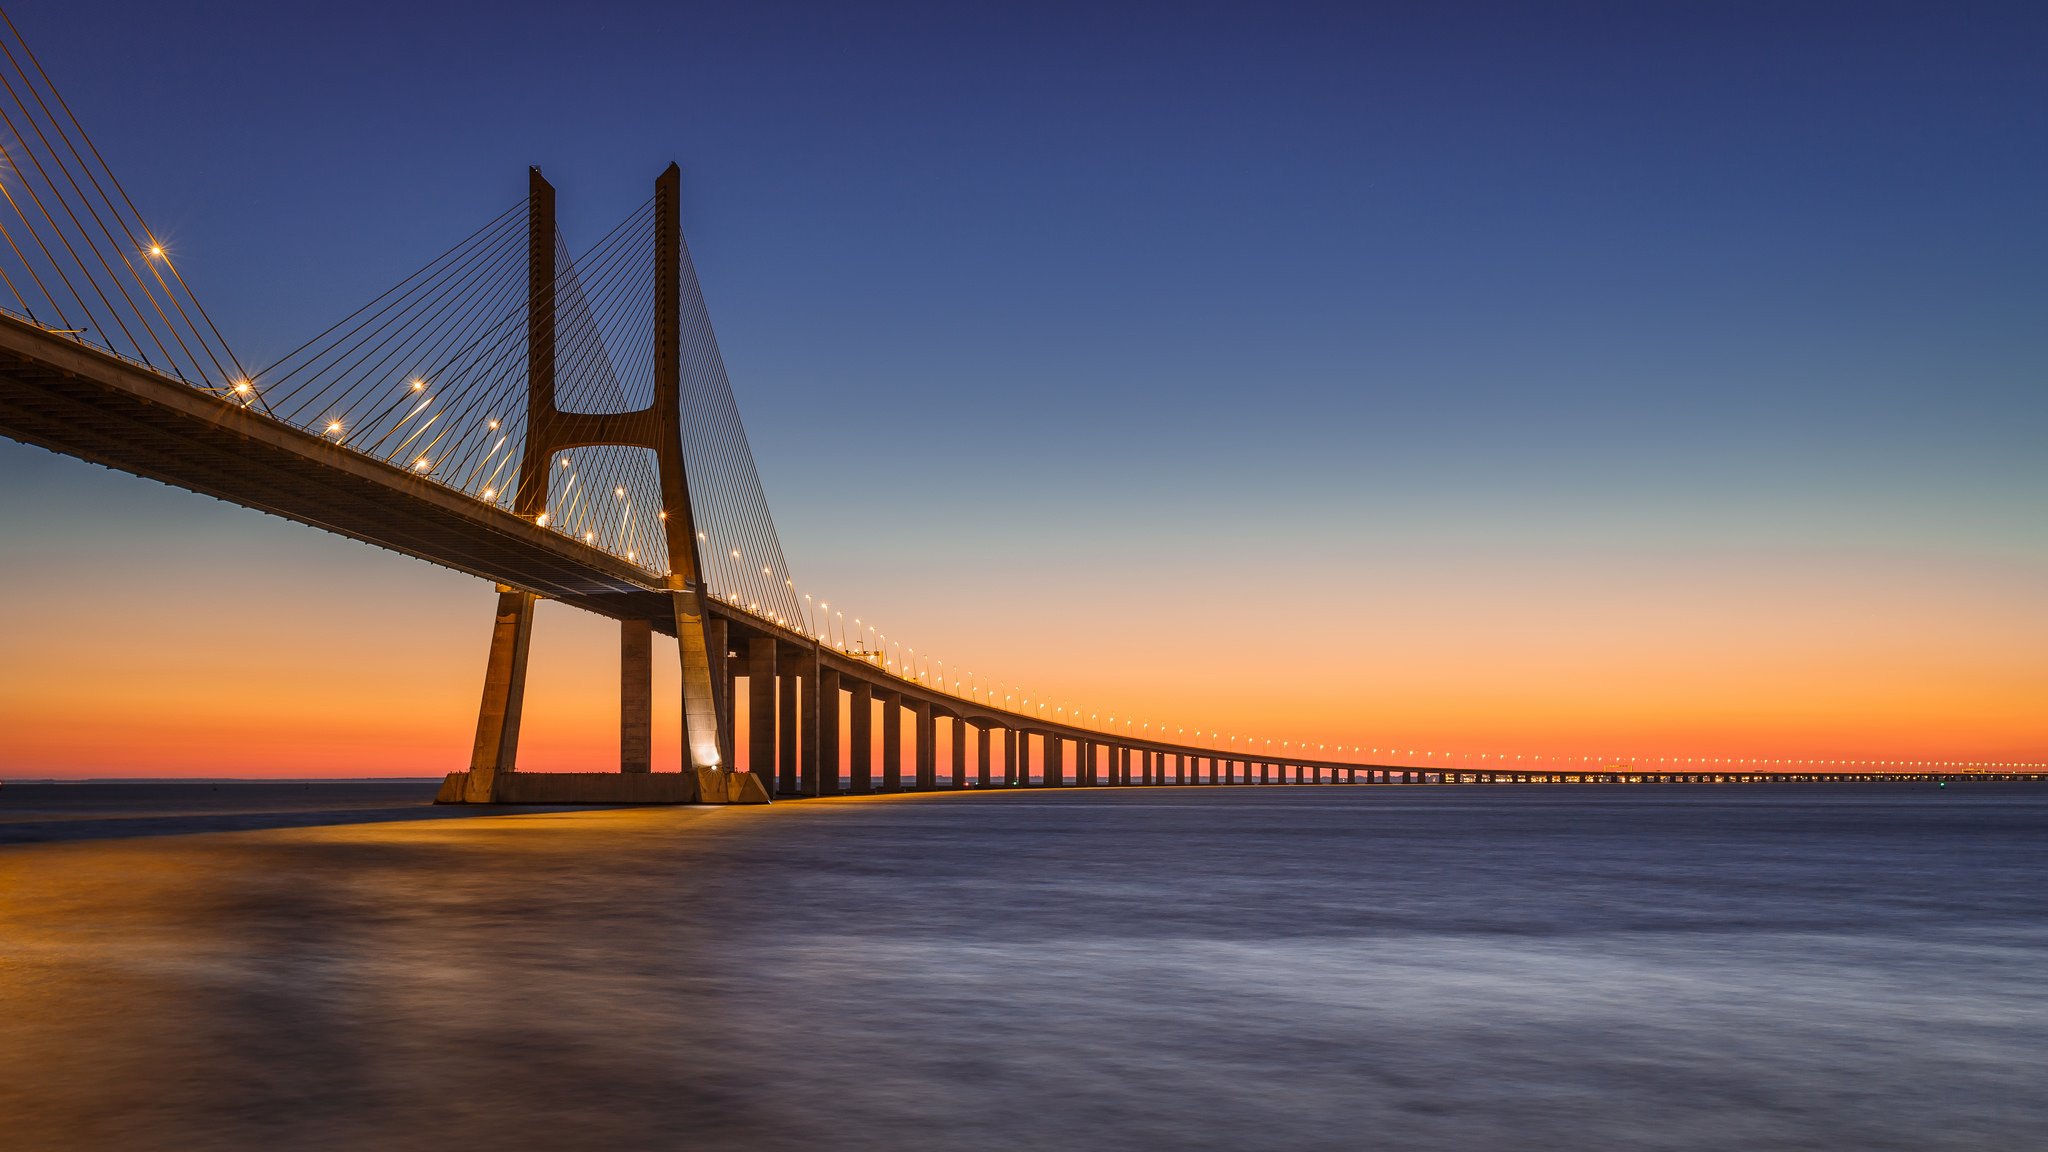 португалия лиссабон река тахо тежу мост васко да гама фонари освещение вечер оранжевый закат синее небо